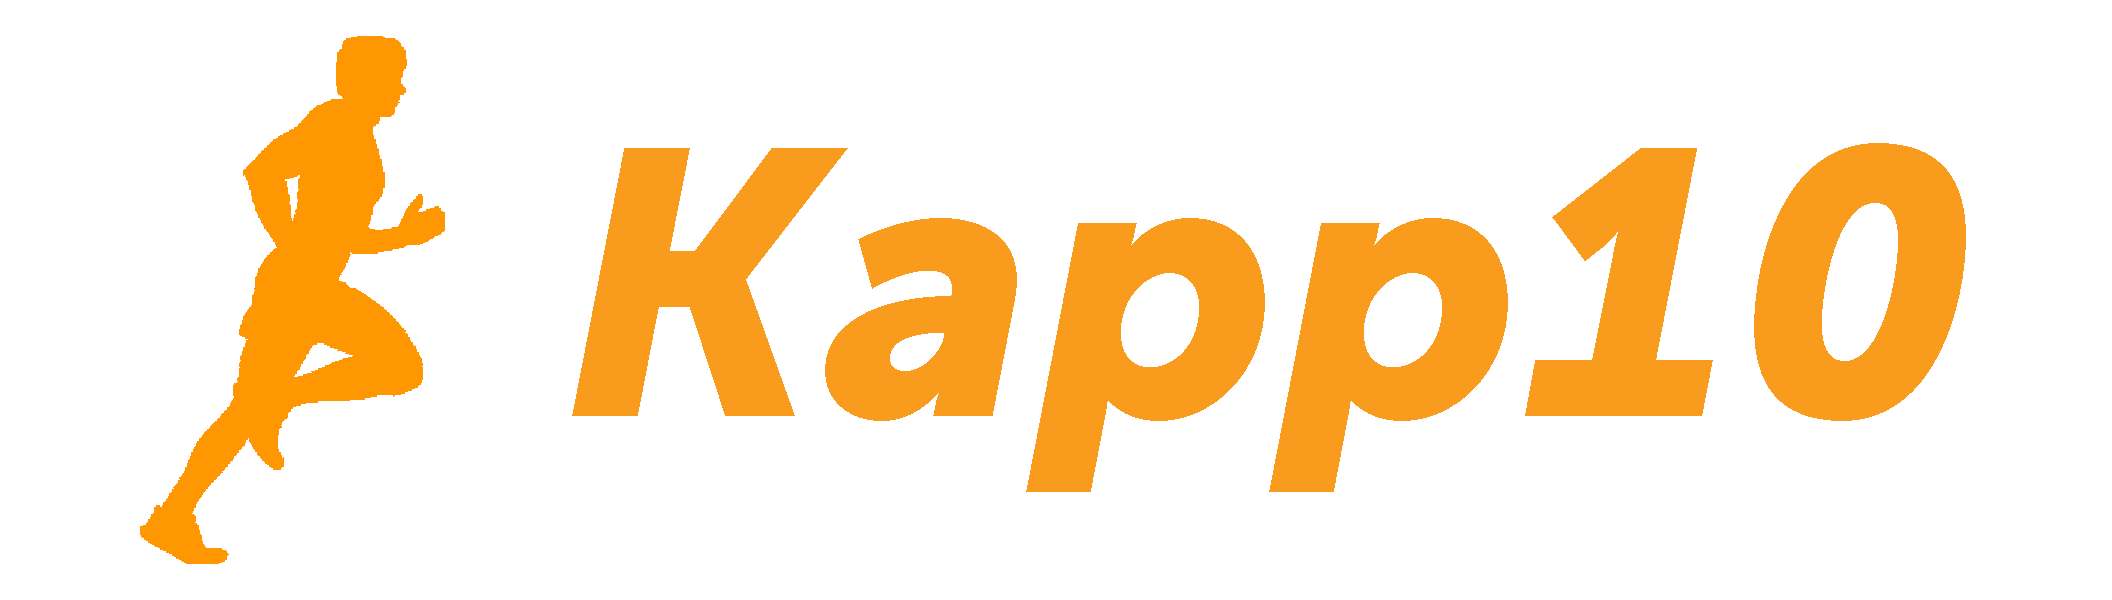 Kapp10 (kappsports / sportpxl)